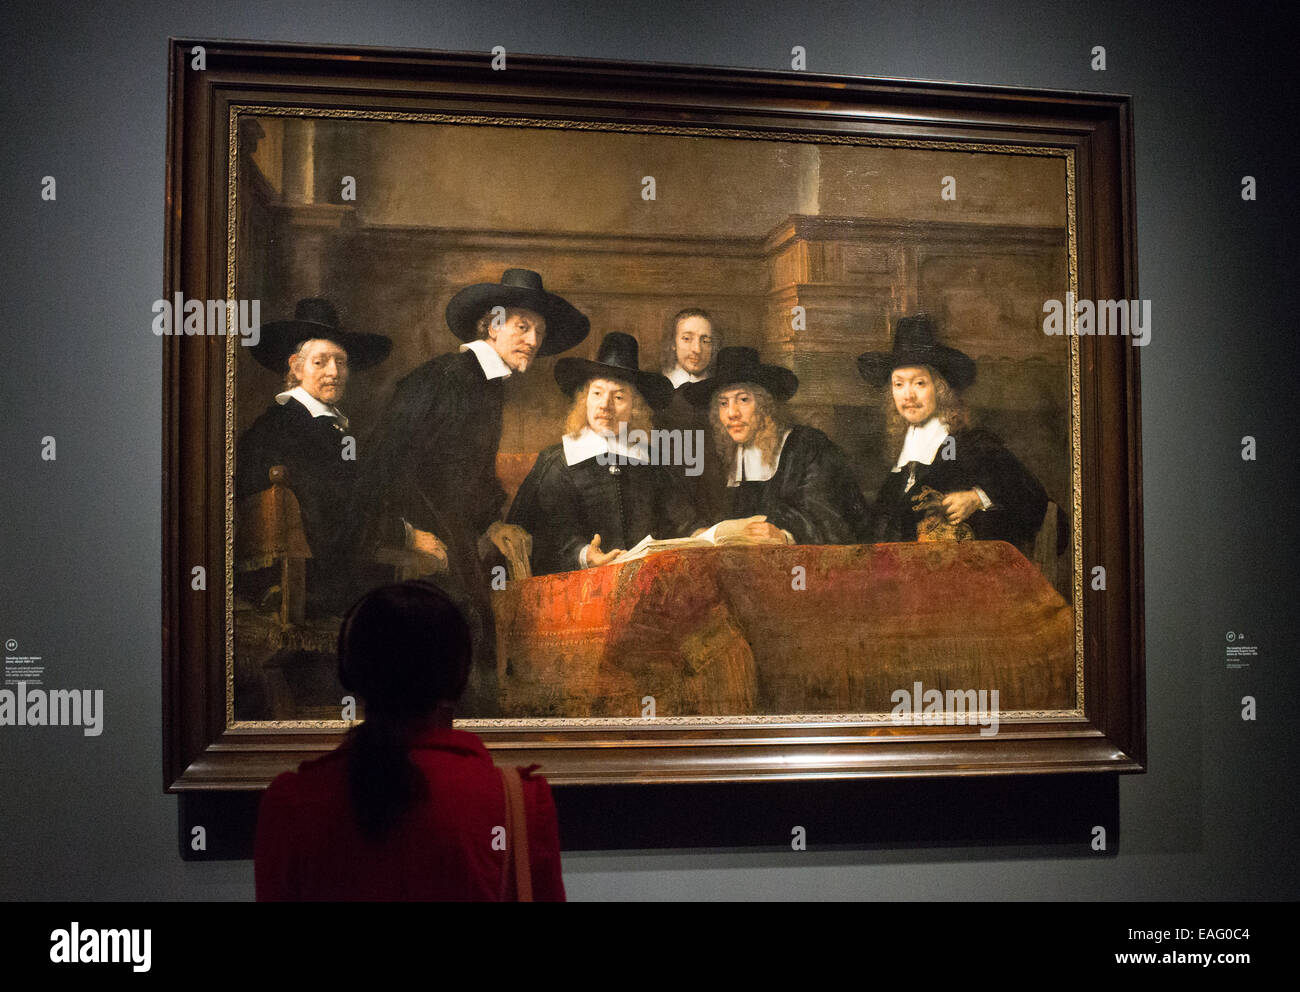 Pinturas de Rembrandt Harmenszoon van Rijn en la Galería Nacional de Londres Foto de stock